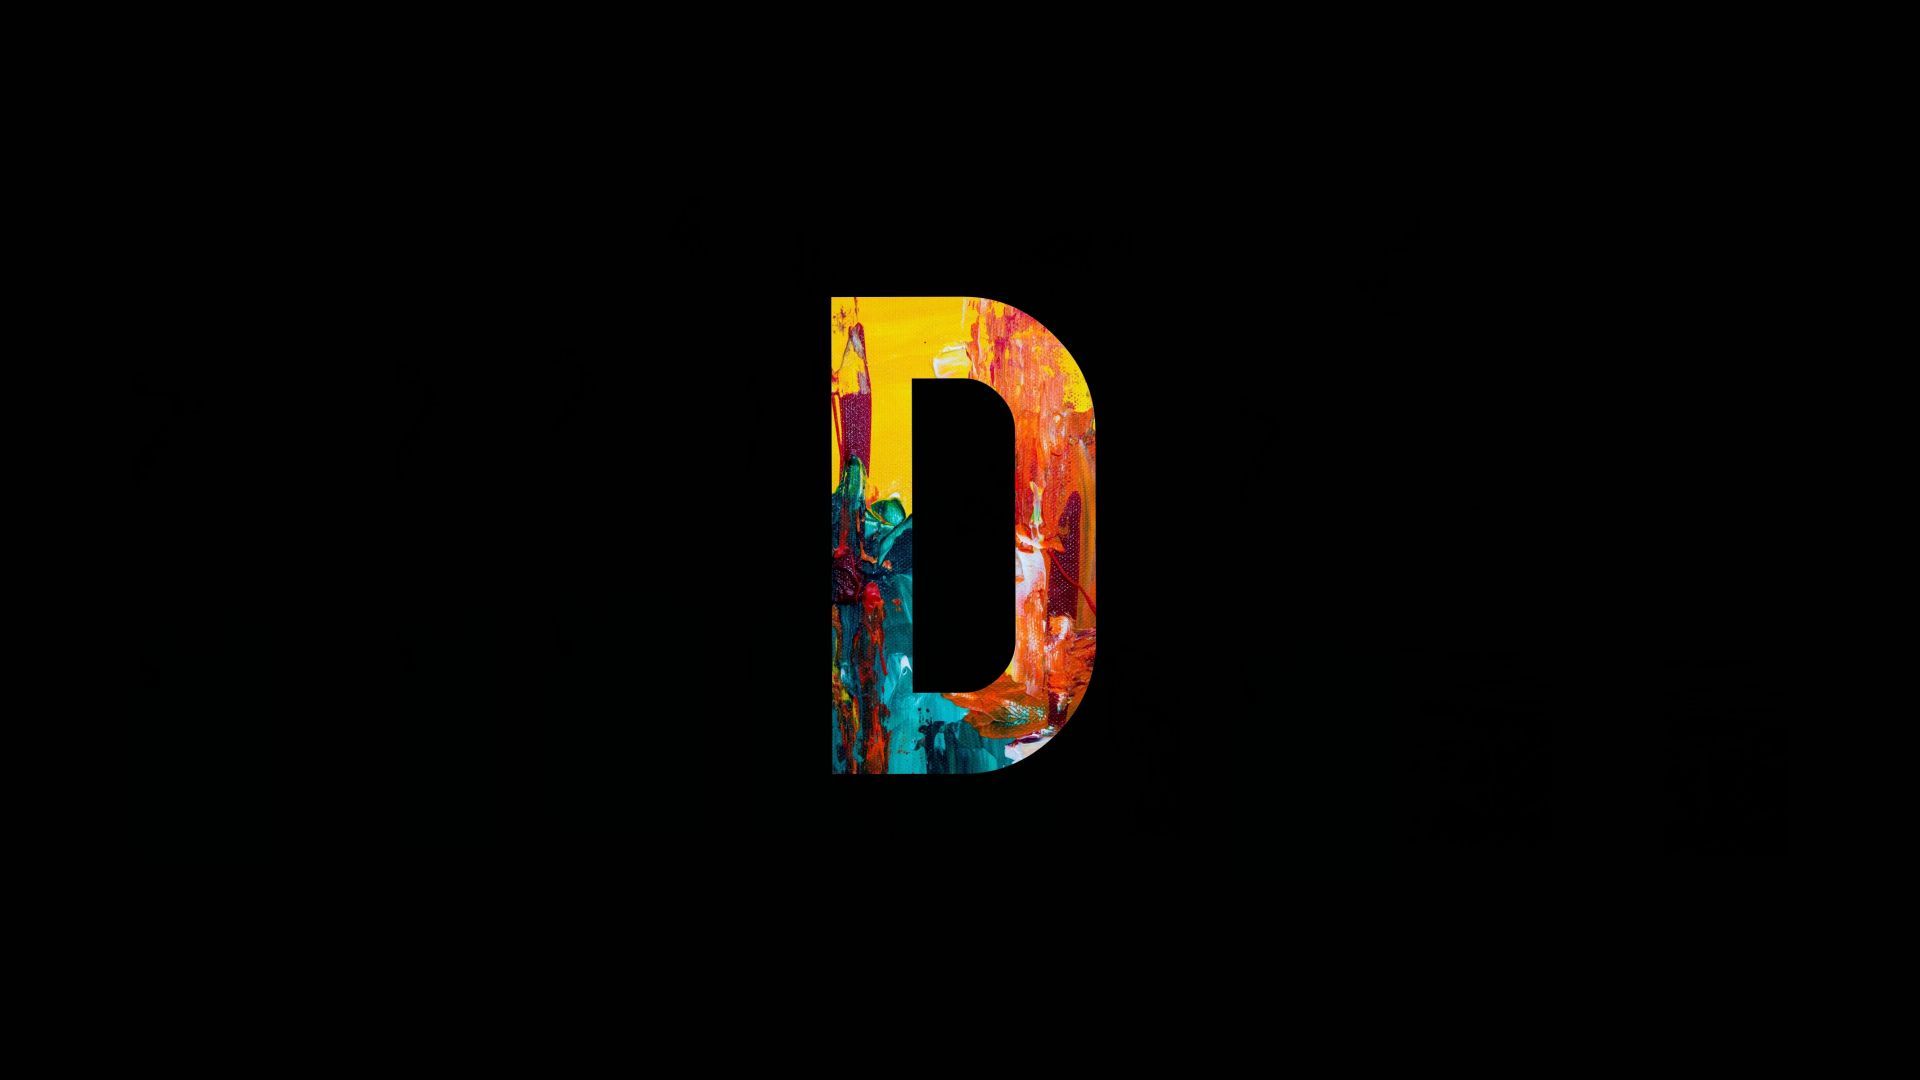 d alphabet, colorful, amoled, art .wallpapermug.com